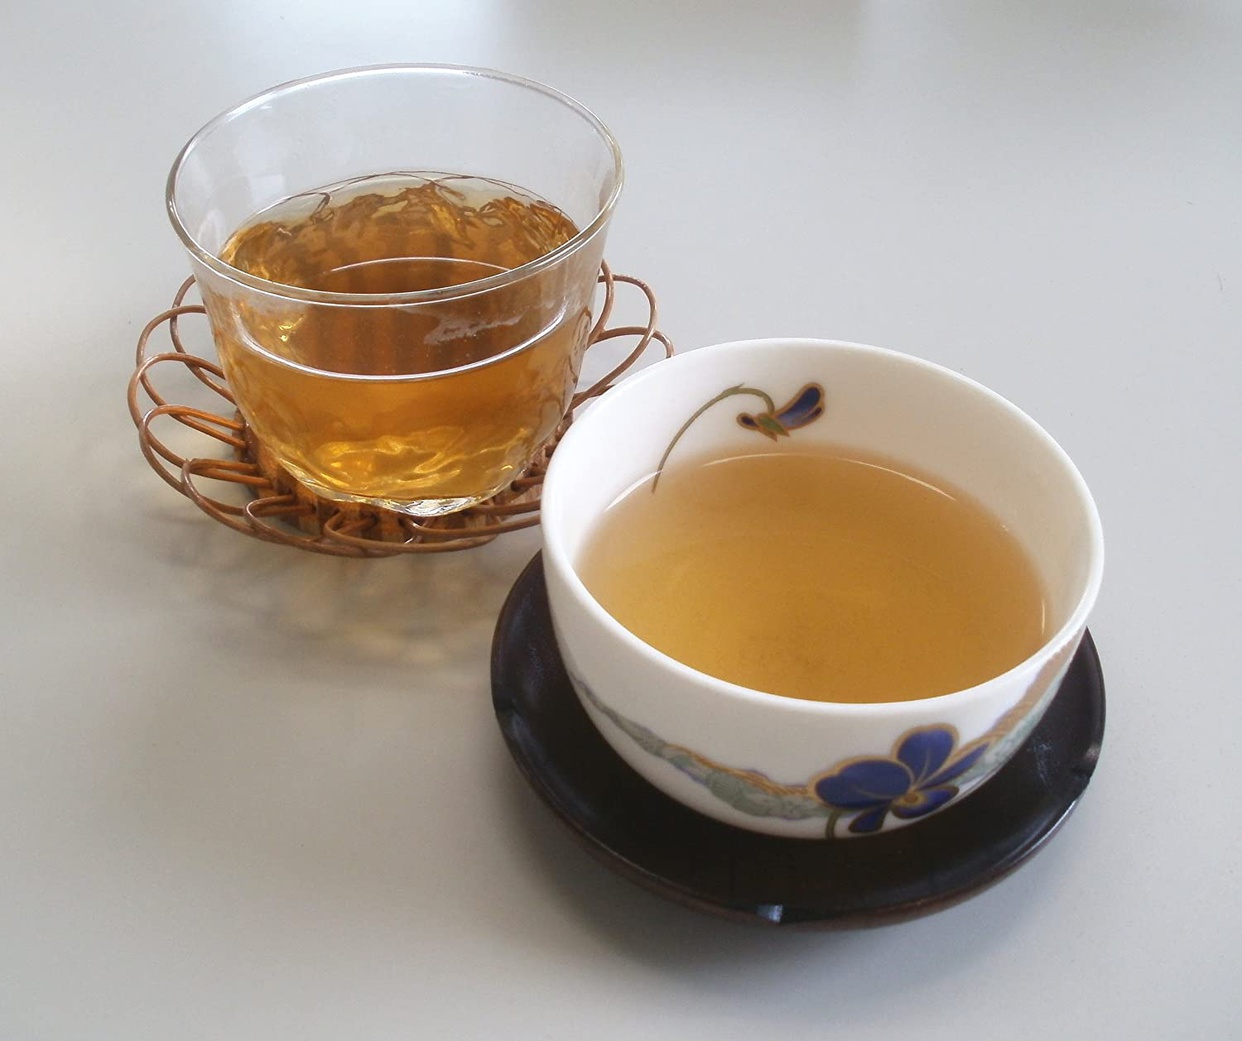 おらが村の健康茶 スギナ茶の商品画像2 